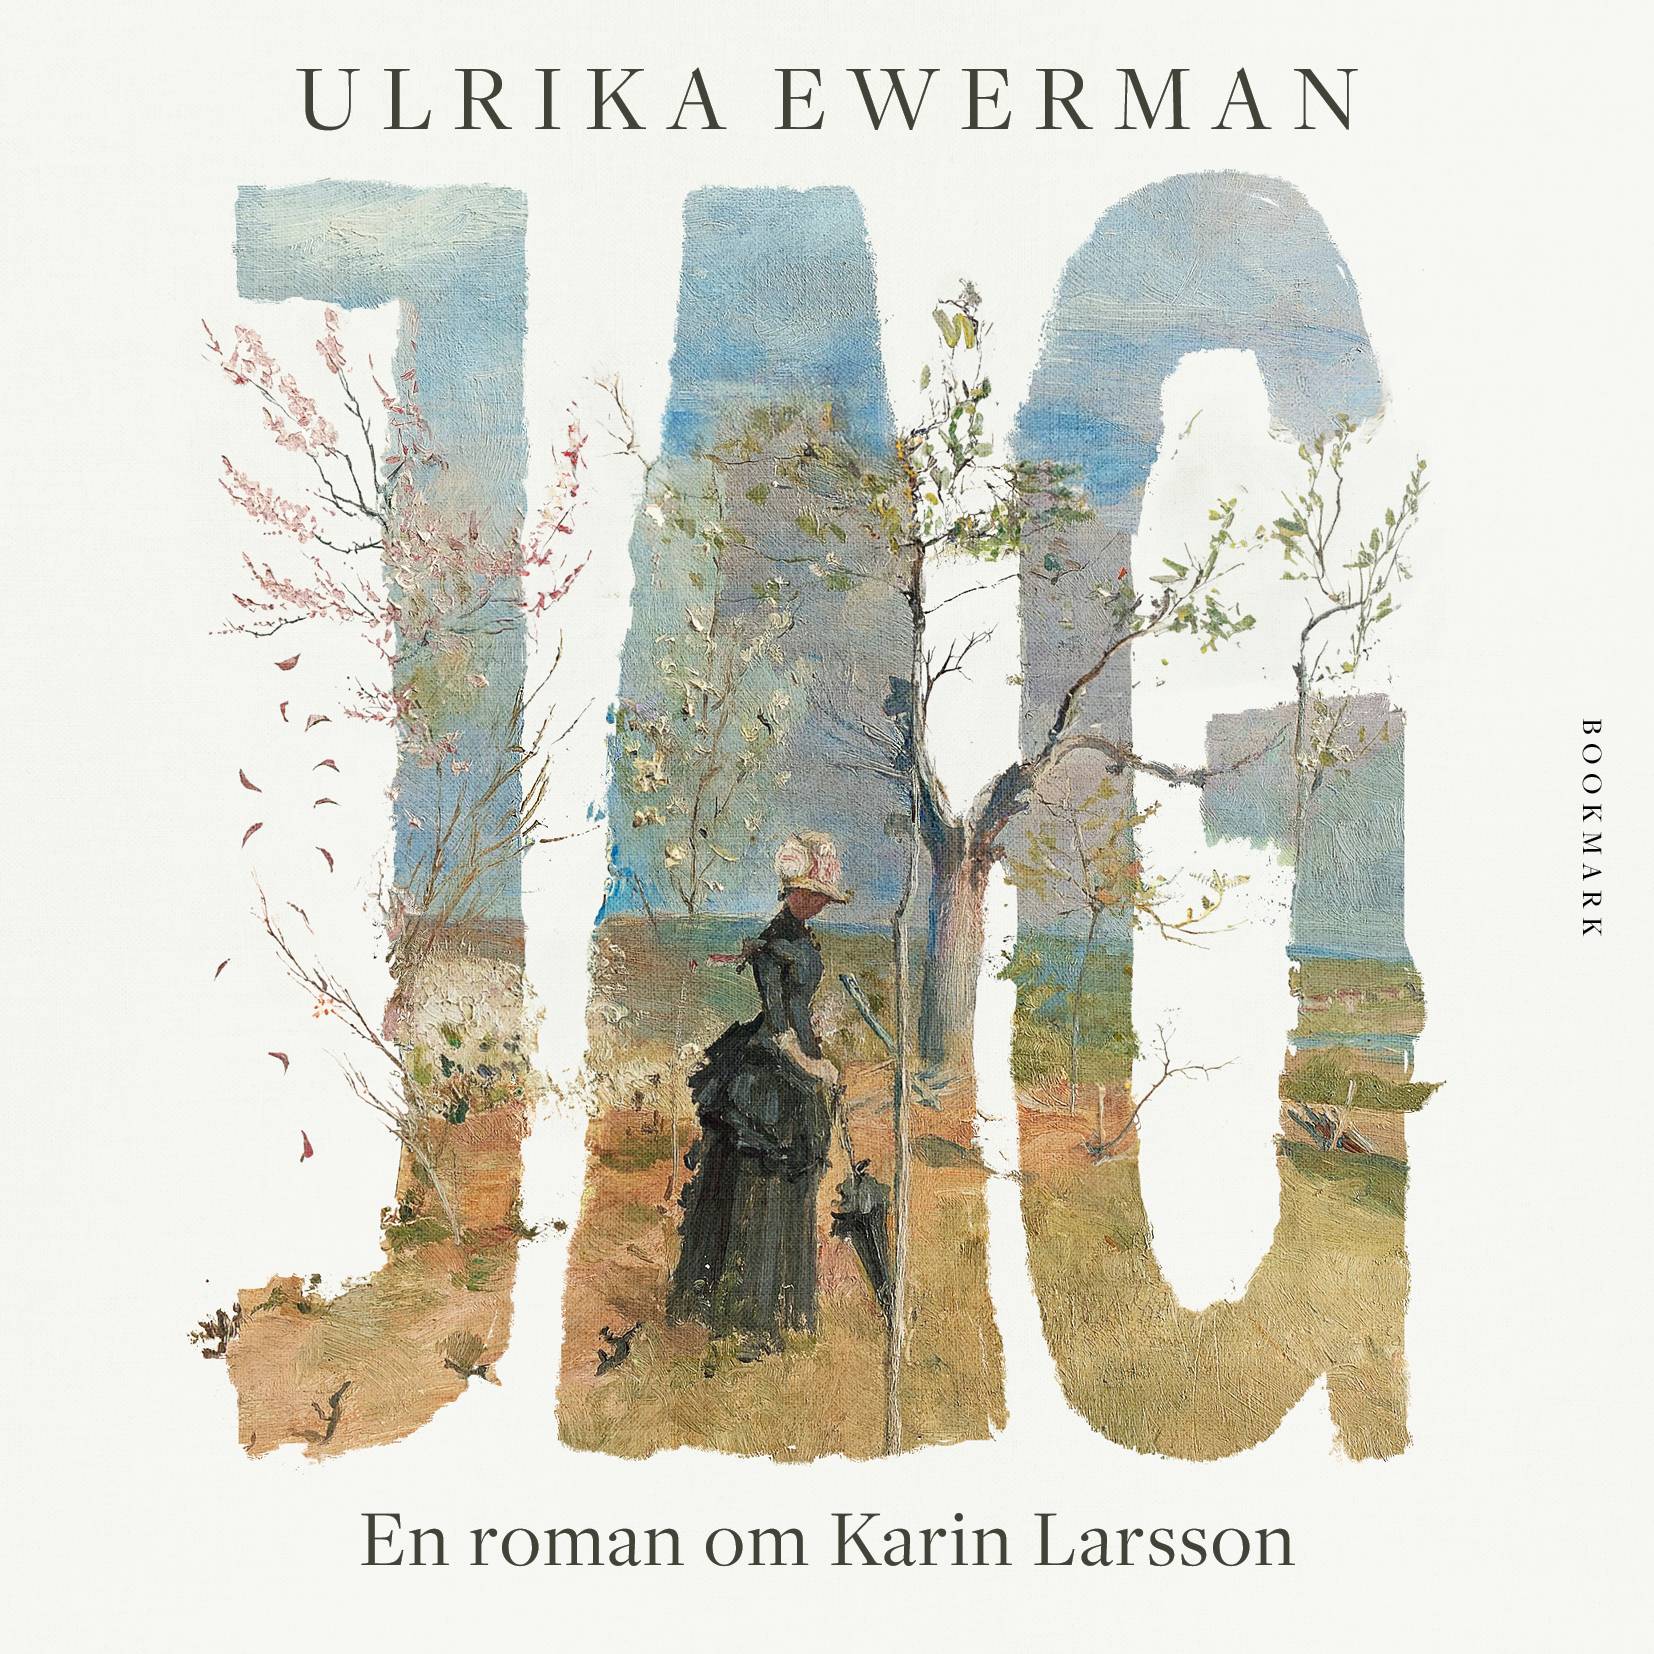 Jag: En roman om Karin Larsson